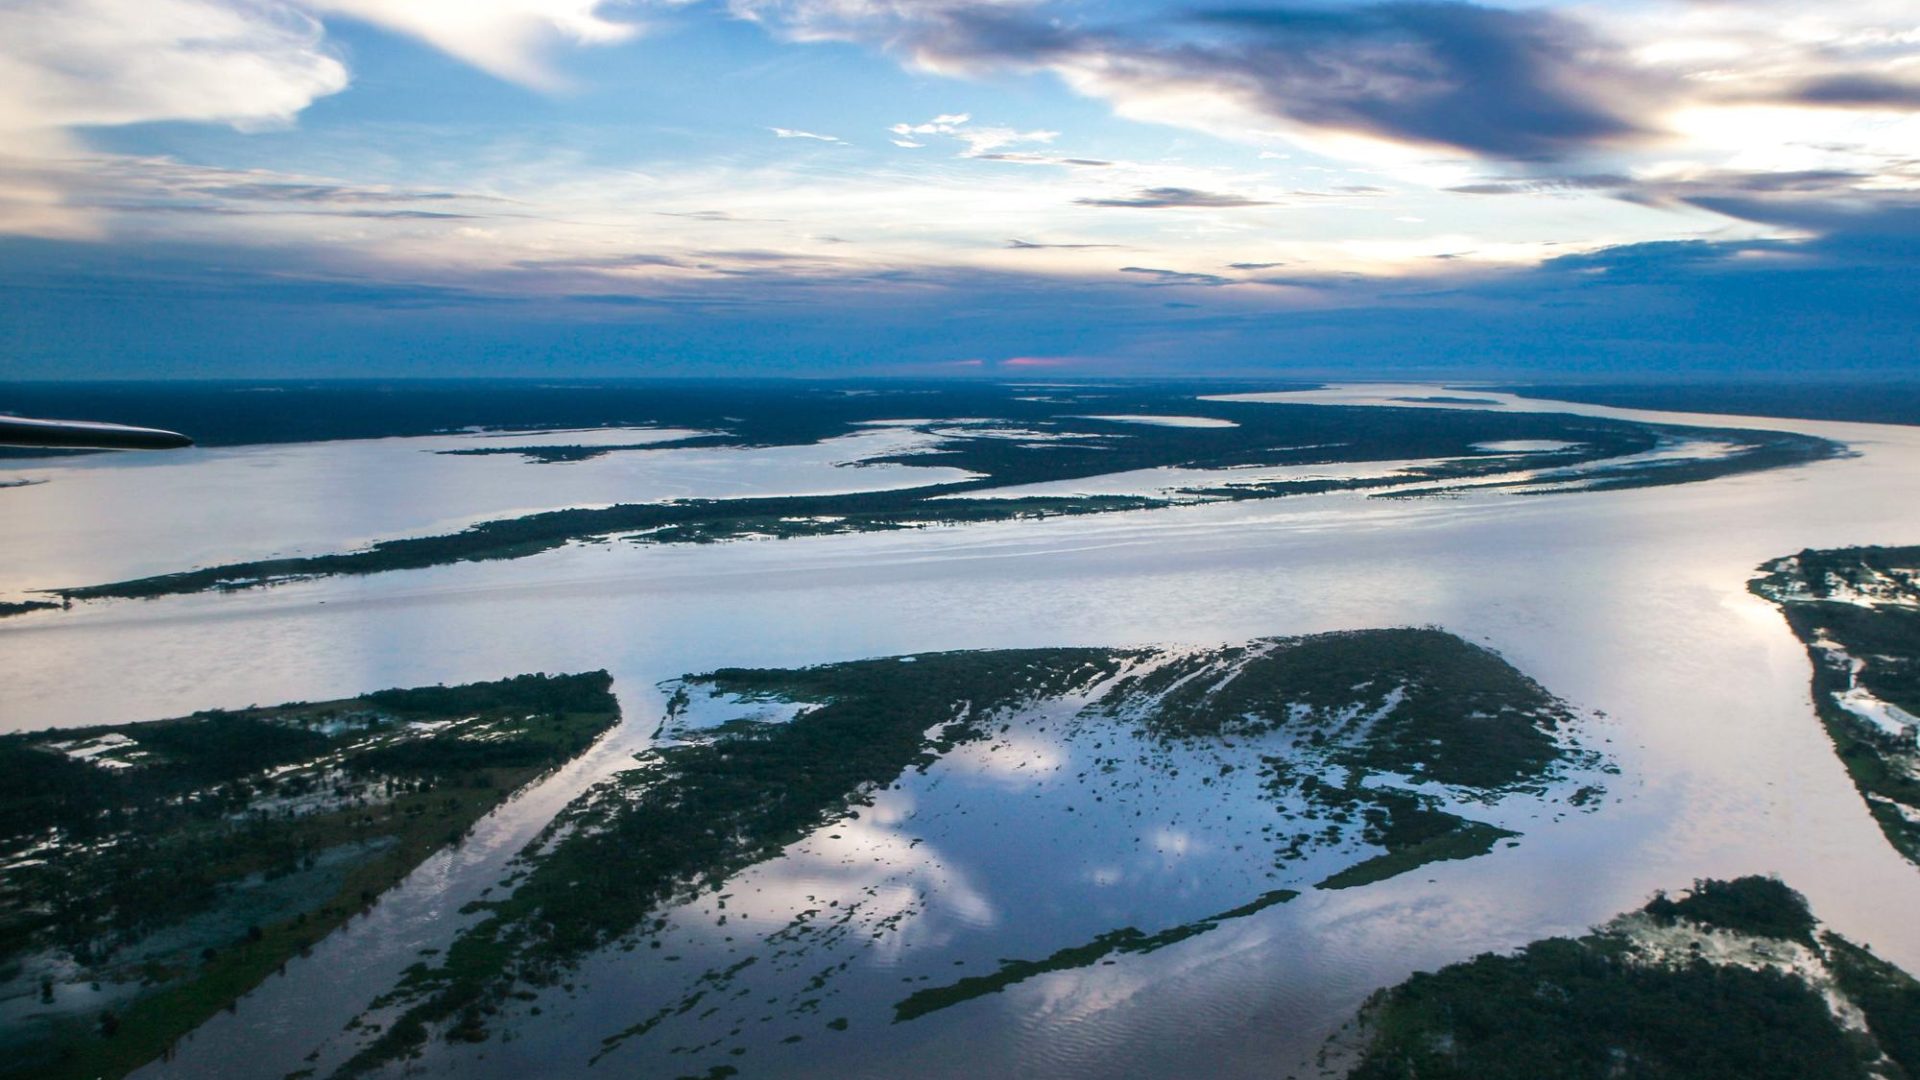 gran tramo del río Amazonas brasileño, los afluentes salen del cuerpo principal del río y hay parches de vegetación verde.